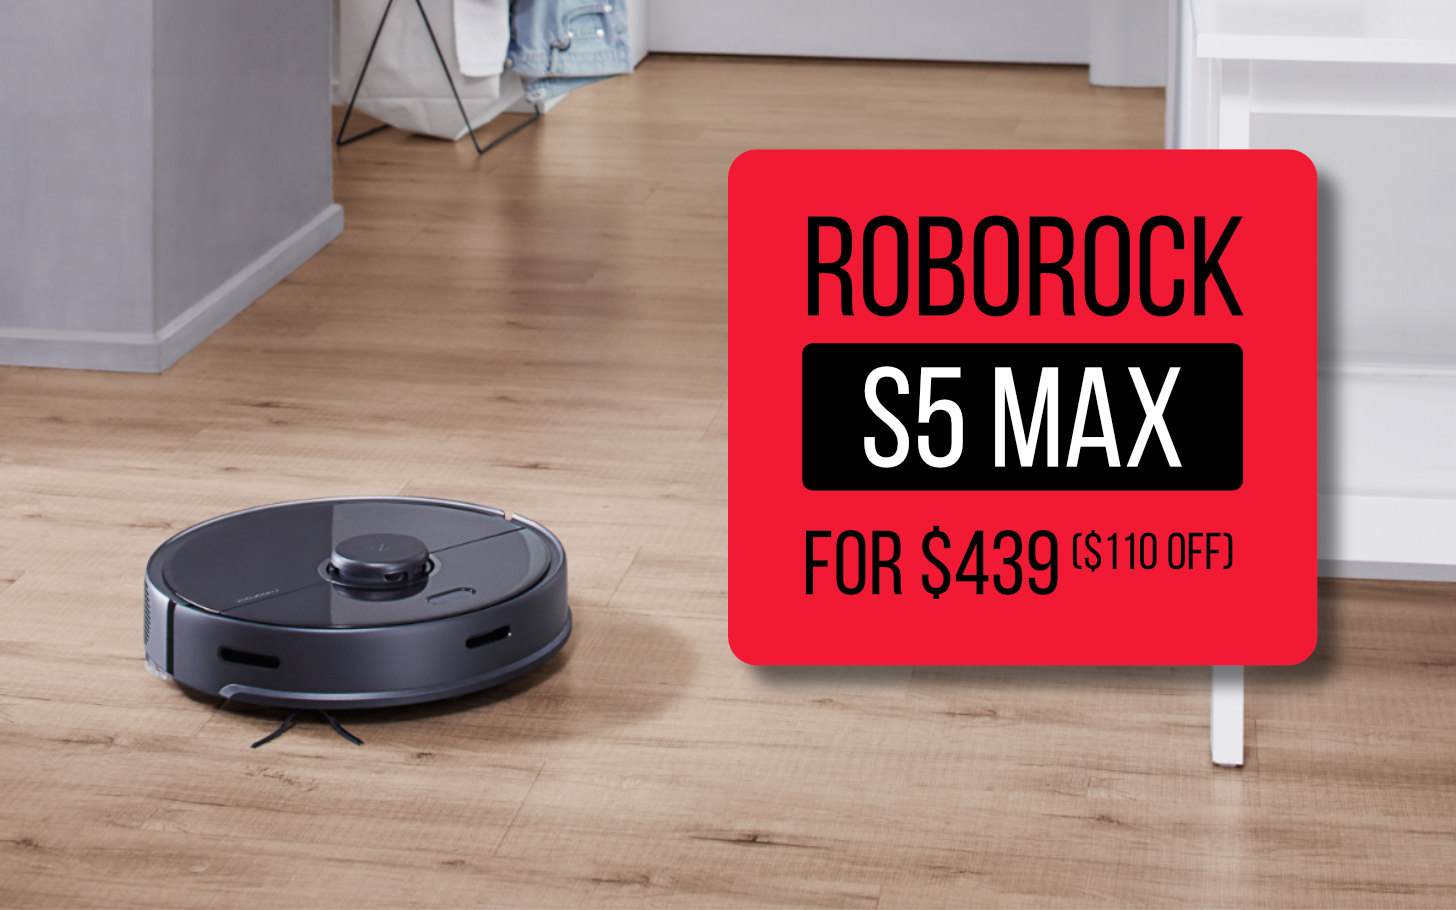 The Roborock S5 Max Smart Vacuum Drops, Black Friday Deals Laminate Flooring